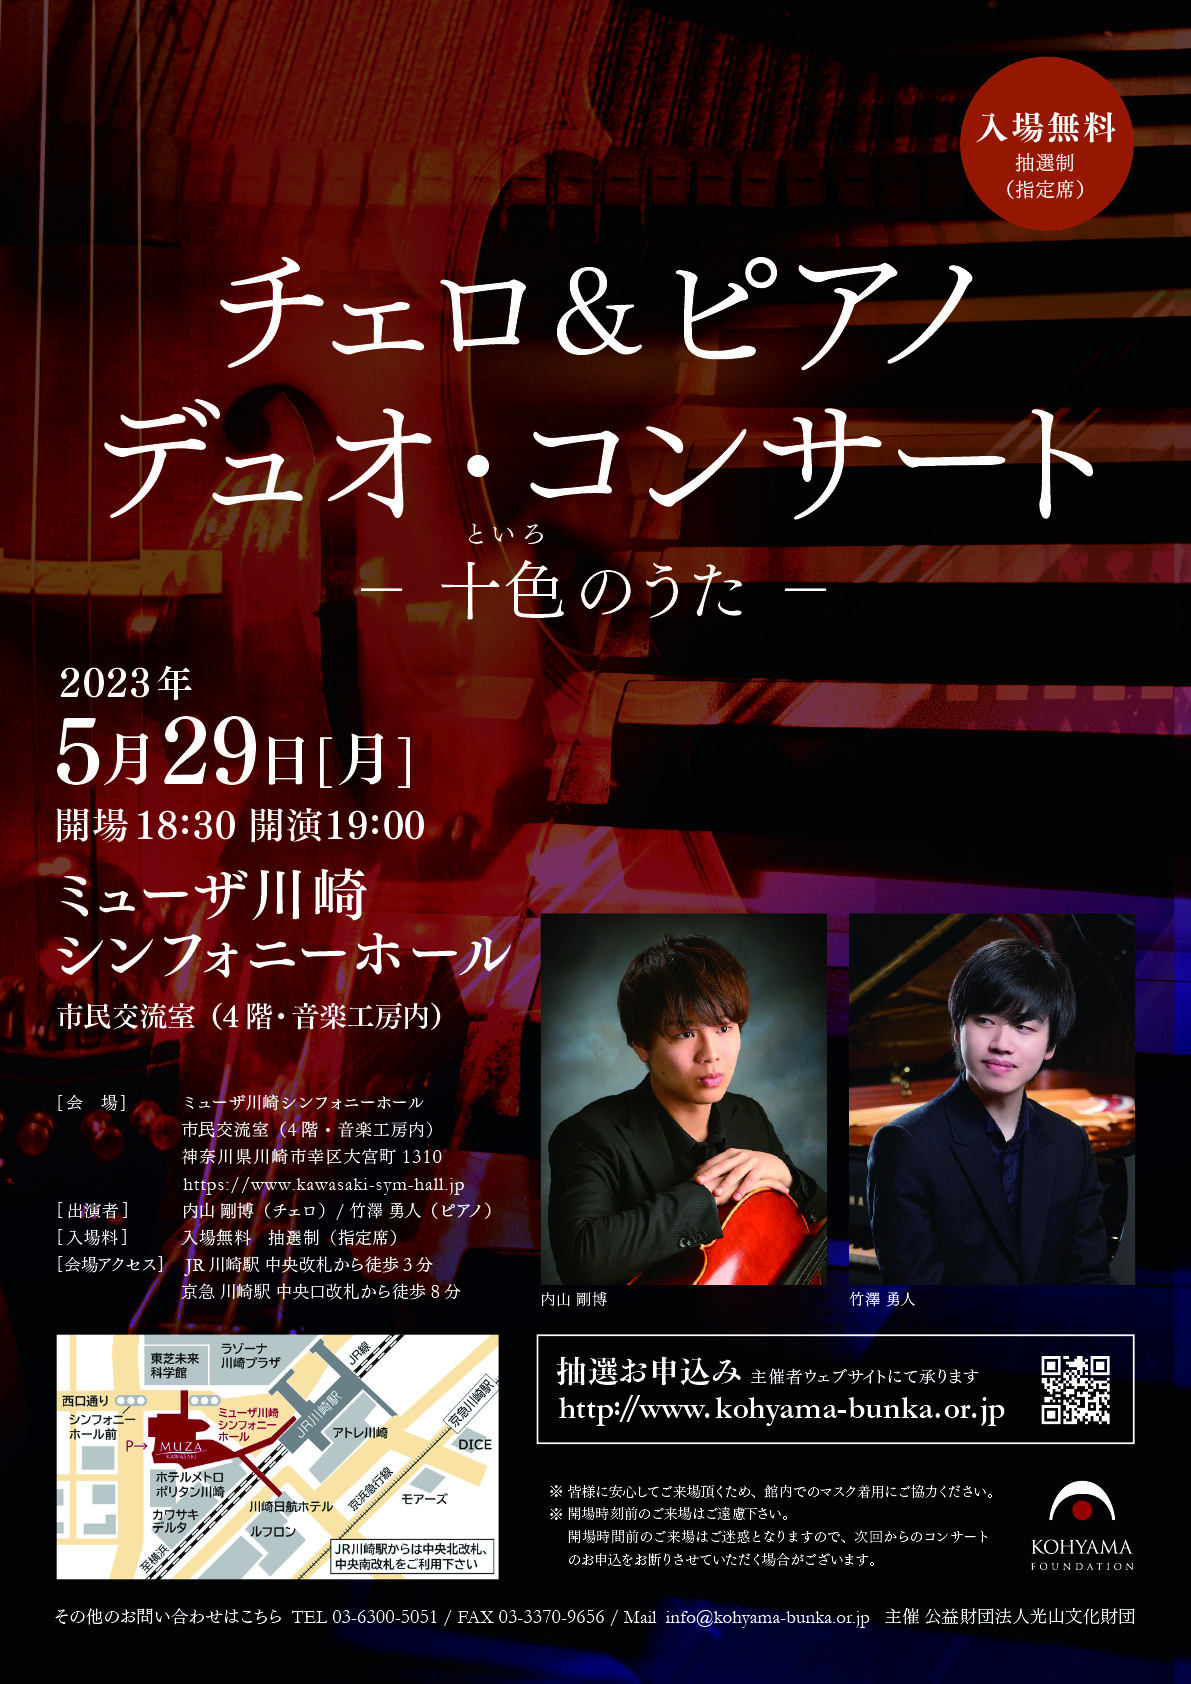 Cello & Piano Duo Concert